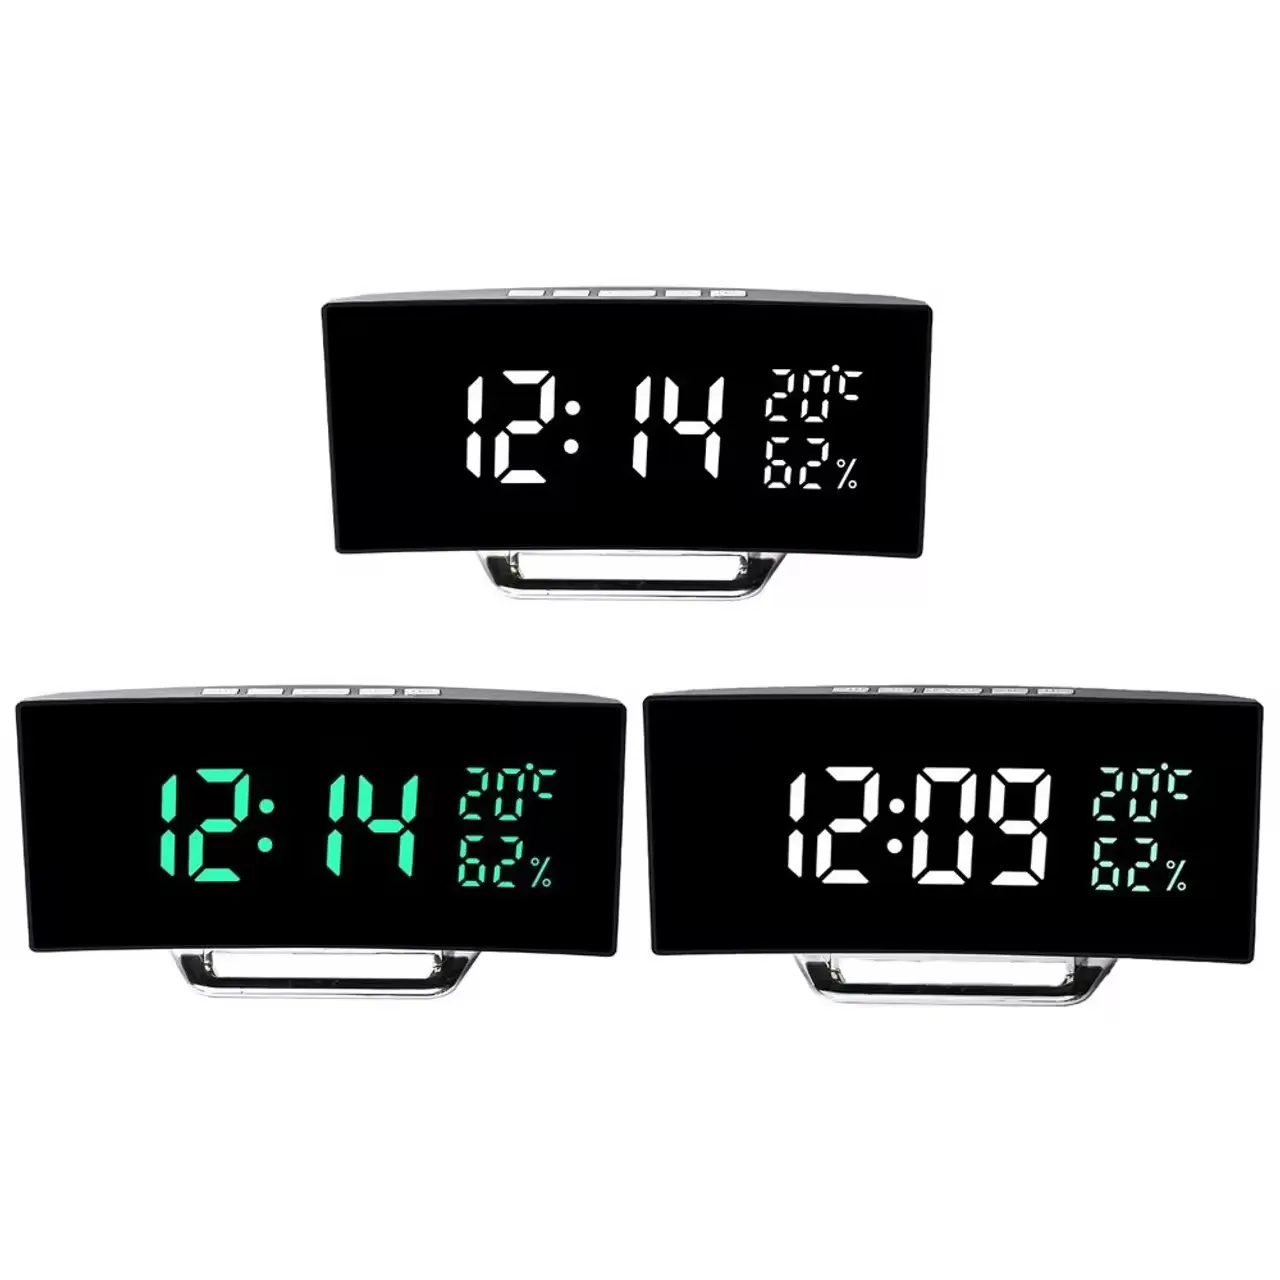 Jam Alarm meja Digital layar LED lengkung sensitif cahaya otomatis elektronik plastik tampilan Desktop LOGO kustom OEM